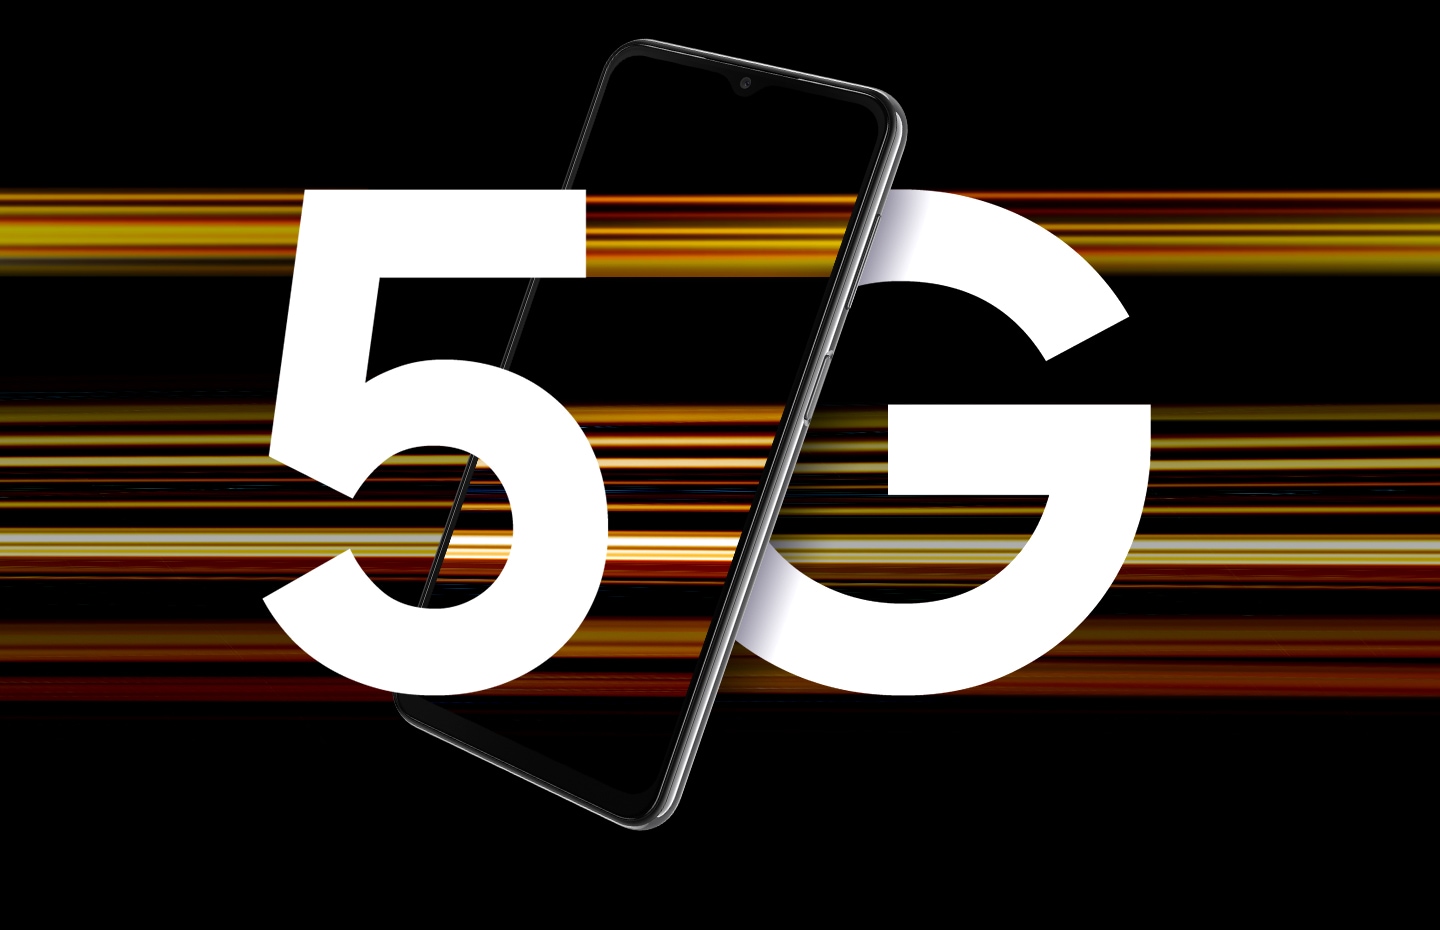 Prikazan je Galaxy A23 5G uređaj sa tekstom 5G podeljenim slovima na uređaju. Šarene pruge svetlosti ga okružuju i predstavljaju velike 5G brzine.